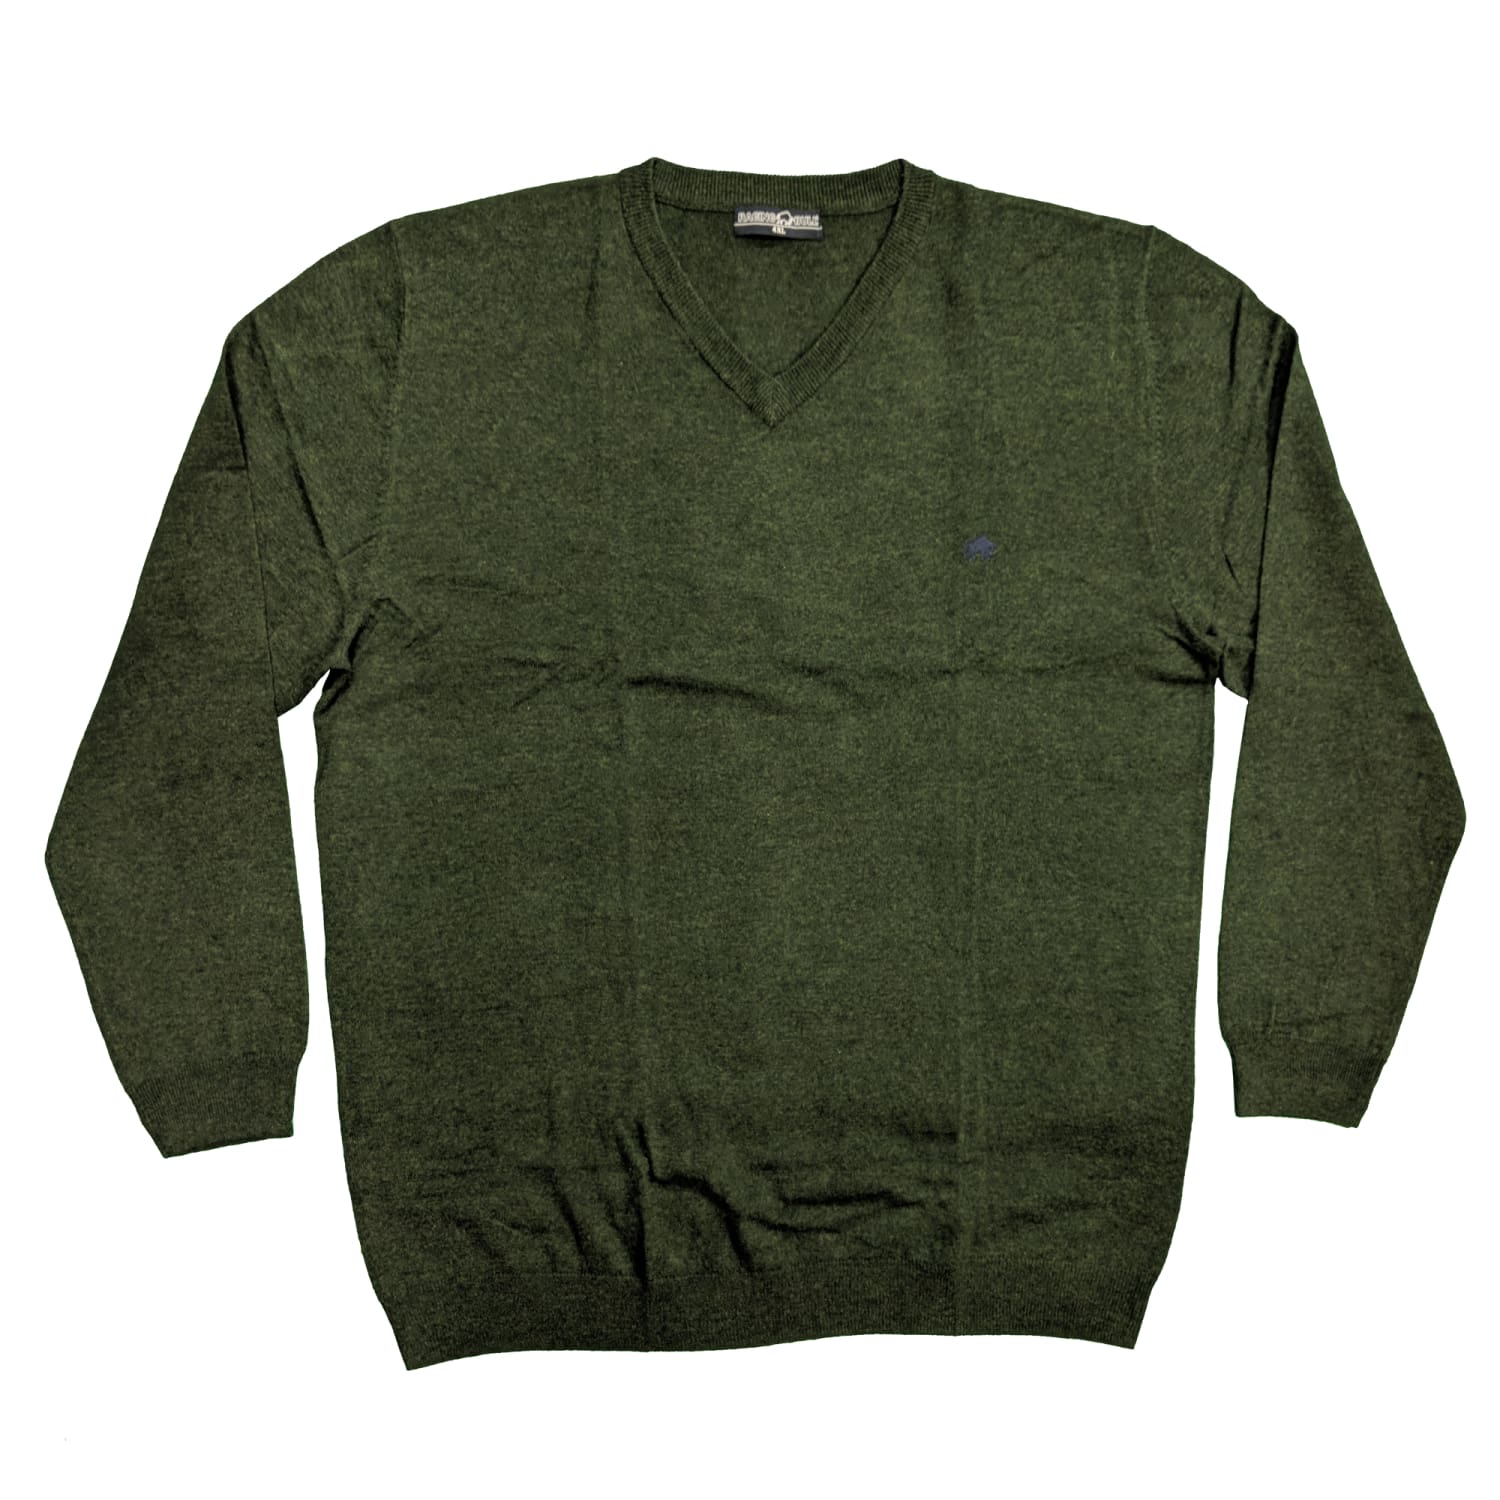 Raging Bull V Neck Sweater - AW1232 - Forest Green 1